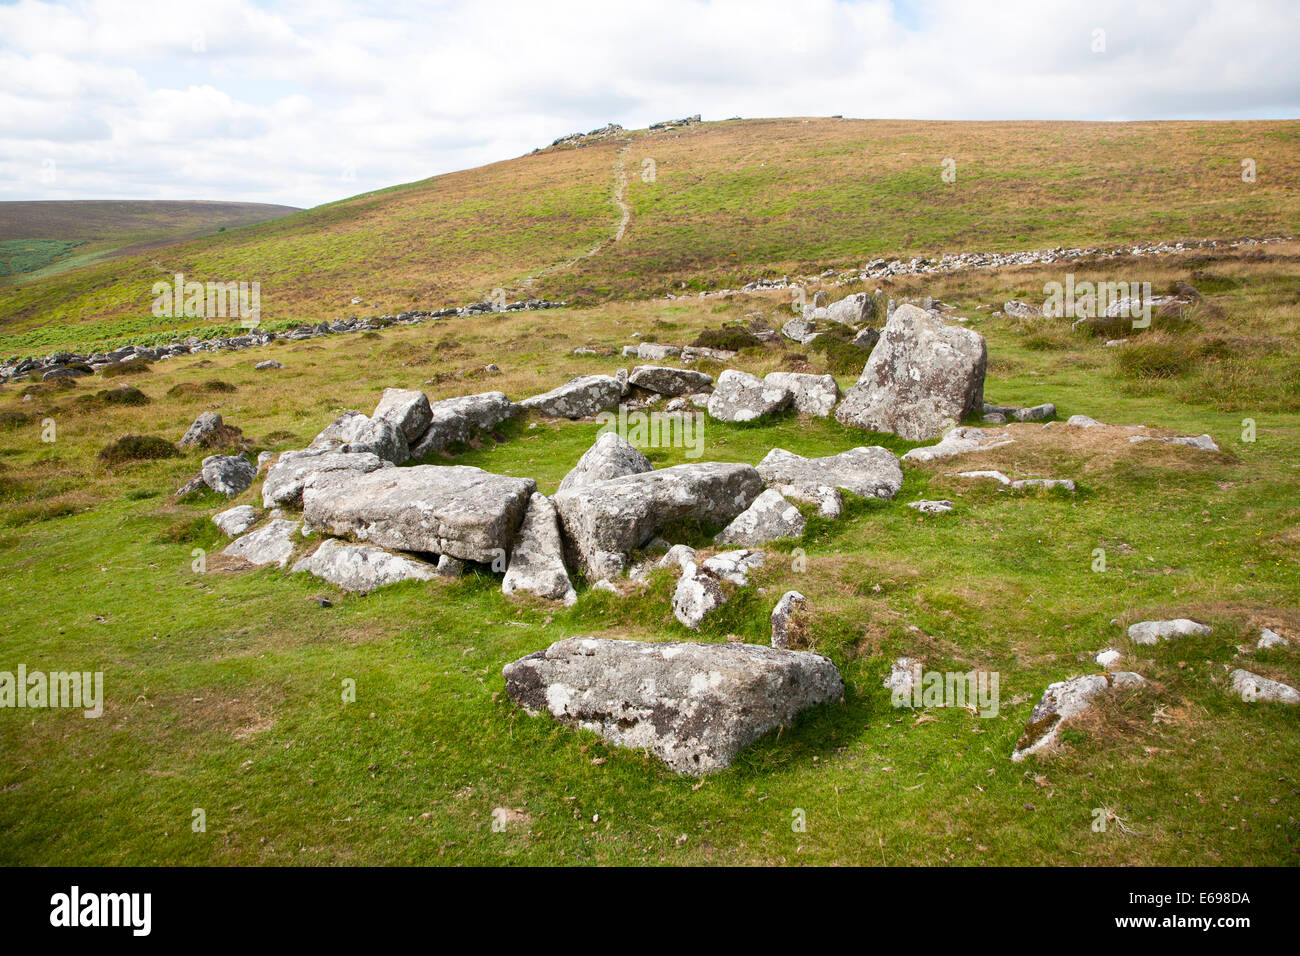 Ruines de cabane en pierre cercle dans la zone enlcosed néolithique de Grimspound, Dartmoor National Park, Devon, Angleterre Banque D'Images